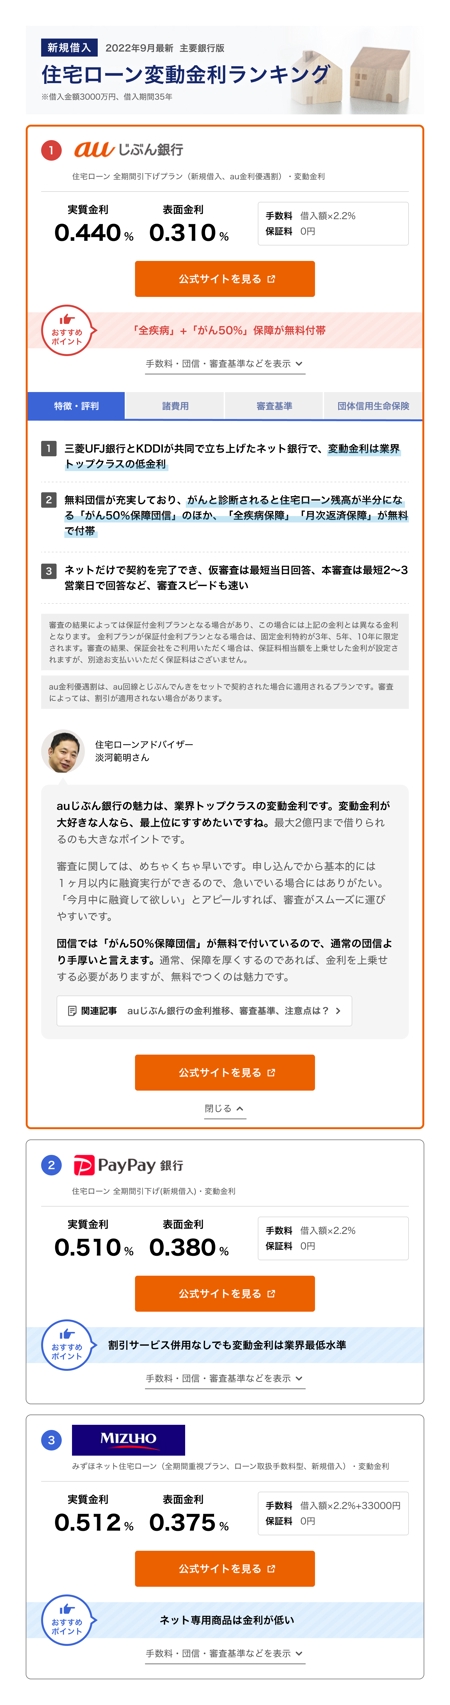 nikkaon (nikkaon)さんの不動産サイトランキングページのデザイン改修案募集への提案